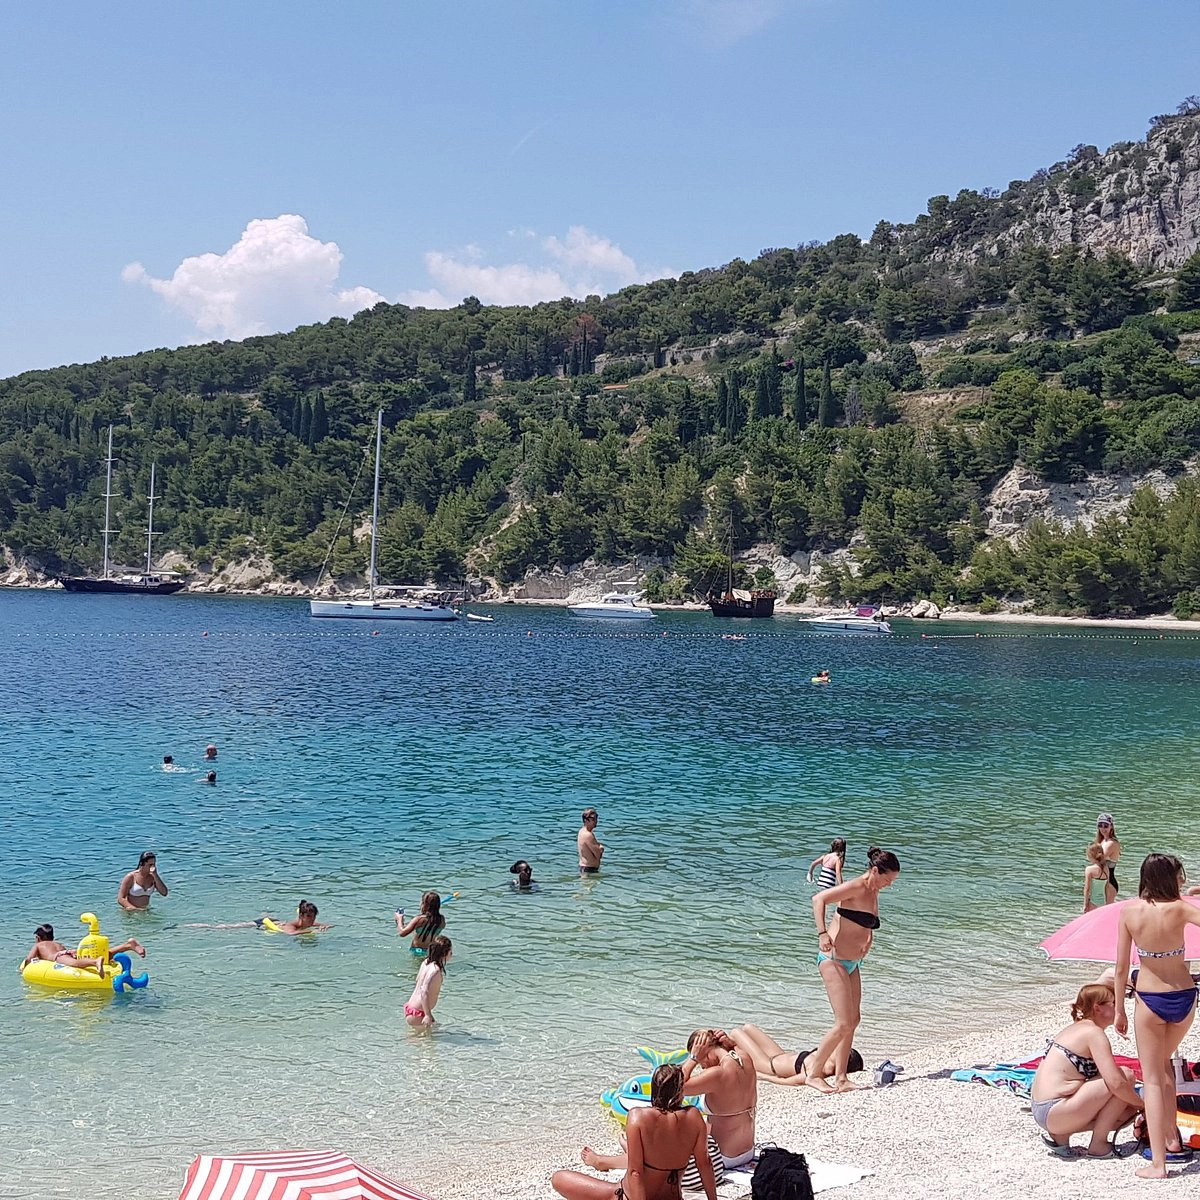  Kašjuni  strand - Croatia